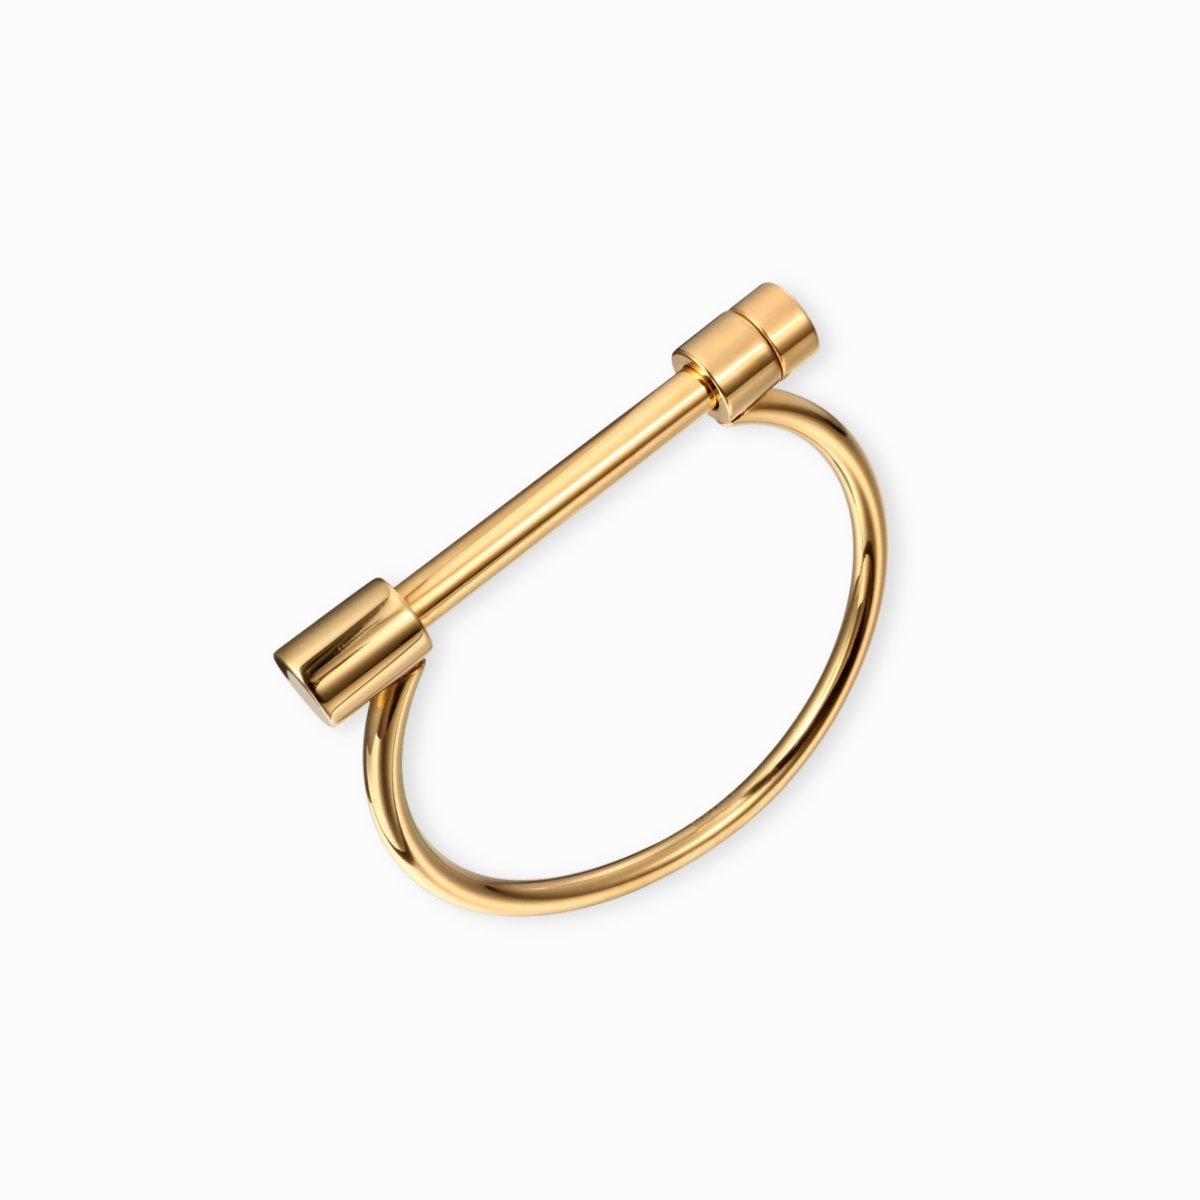 Bracelete Manguito Parafuso Banhado em Ouro 18K - Murano Joias